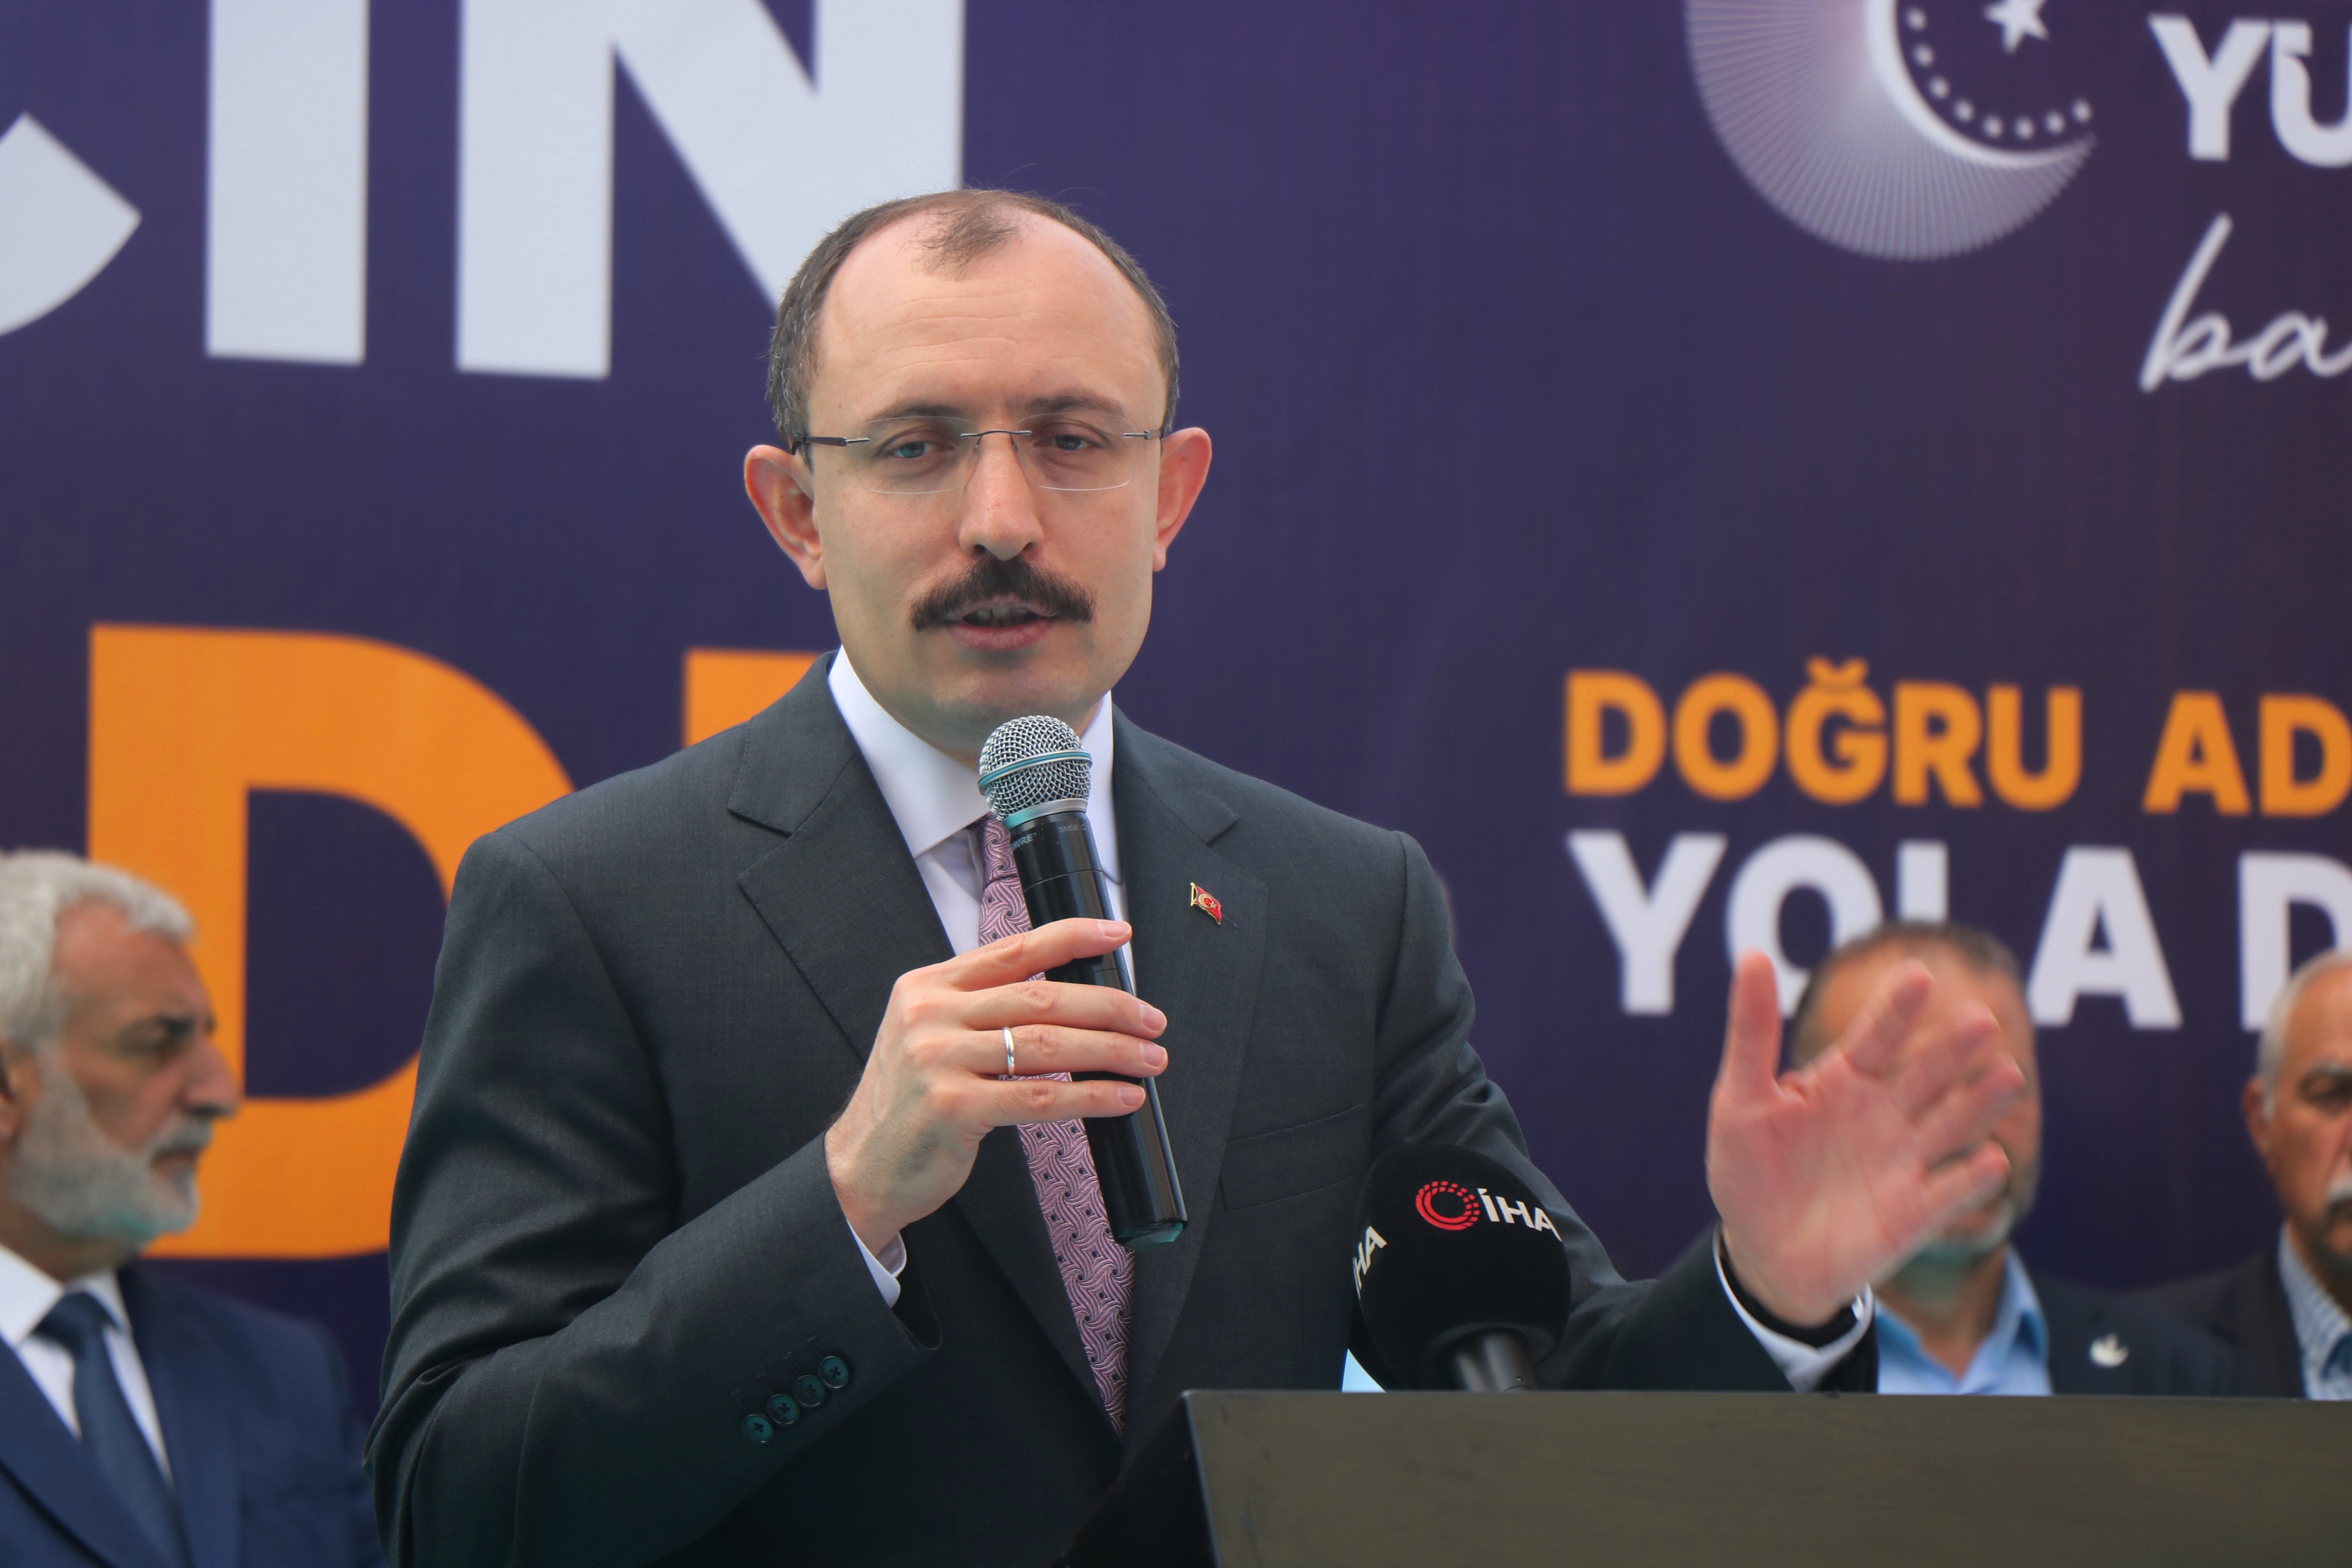 Ticaret Bakanı Muş'tan Davutoğlu’na eleştiri: "Elinde ne var ne yok fırlatıyor"